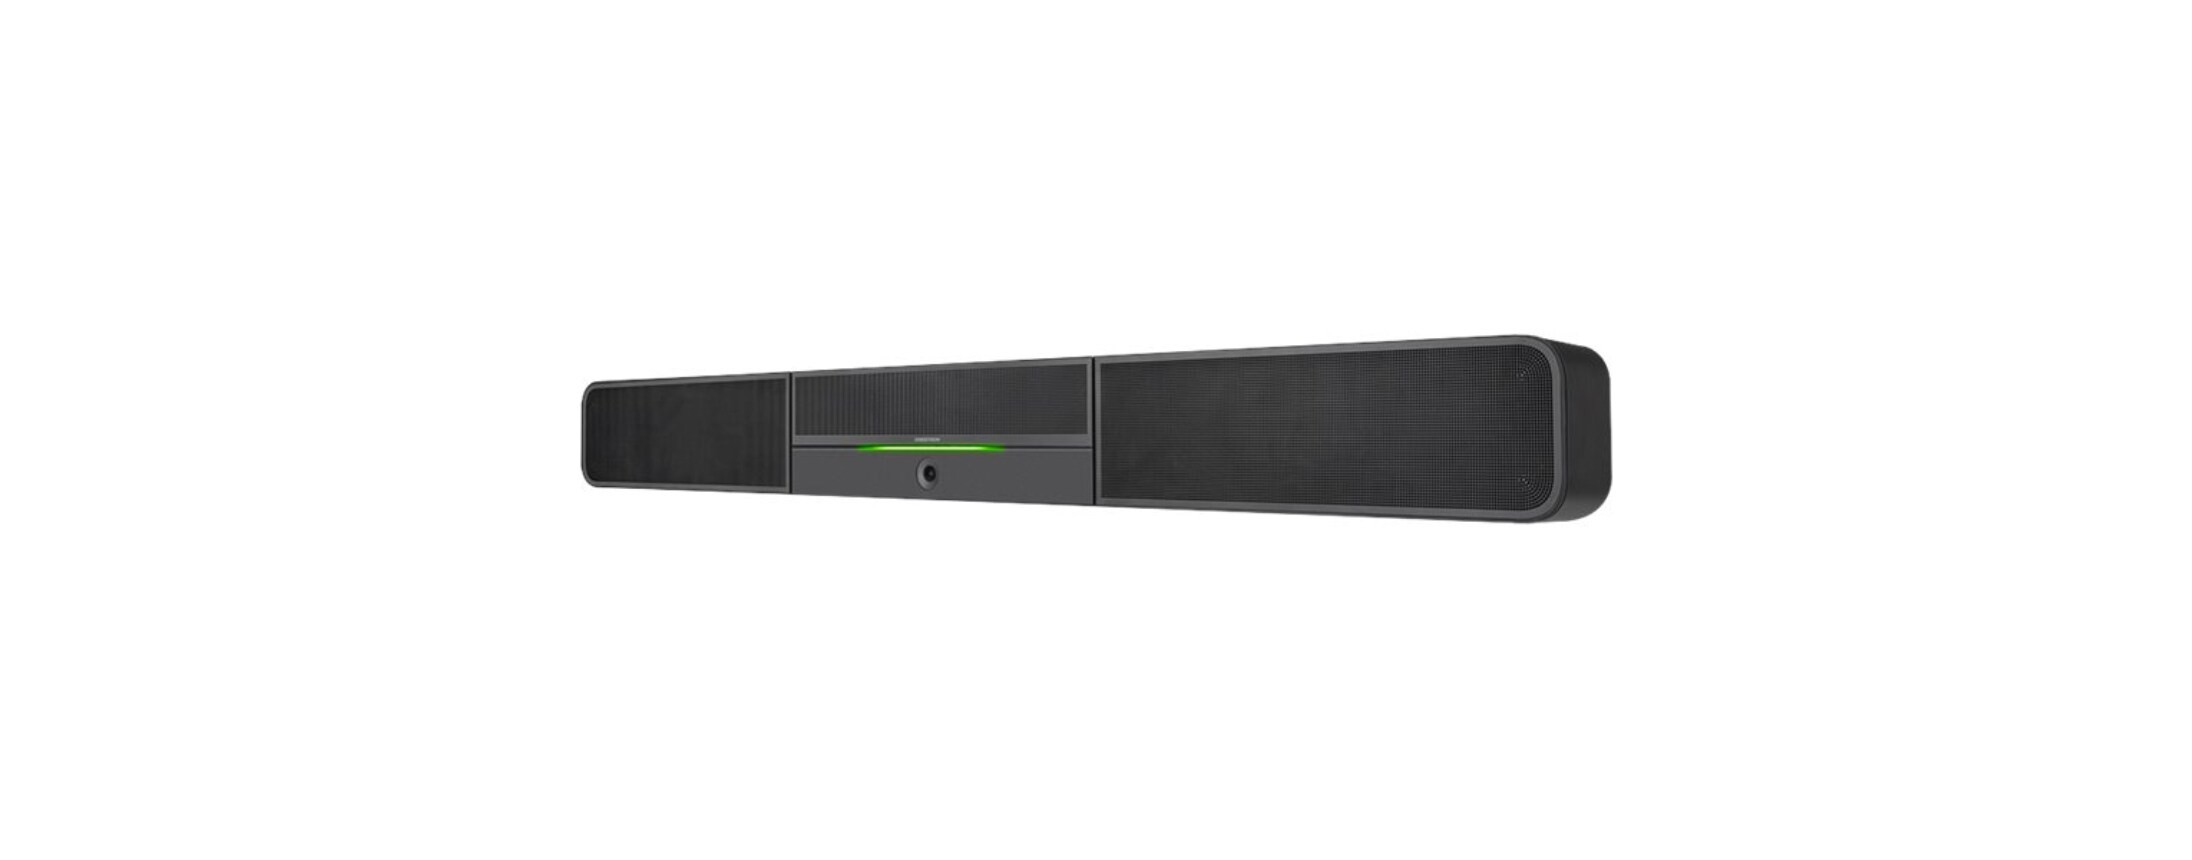 Crestron UC Video Conference USB 3.0 Smart Soundbar UC-SB1-CAM